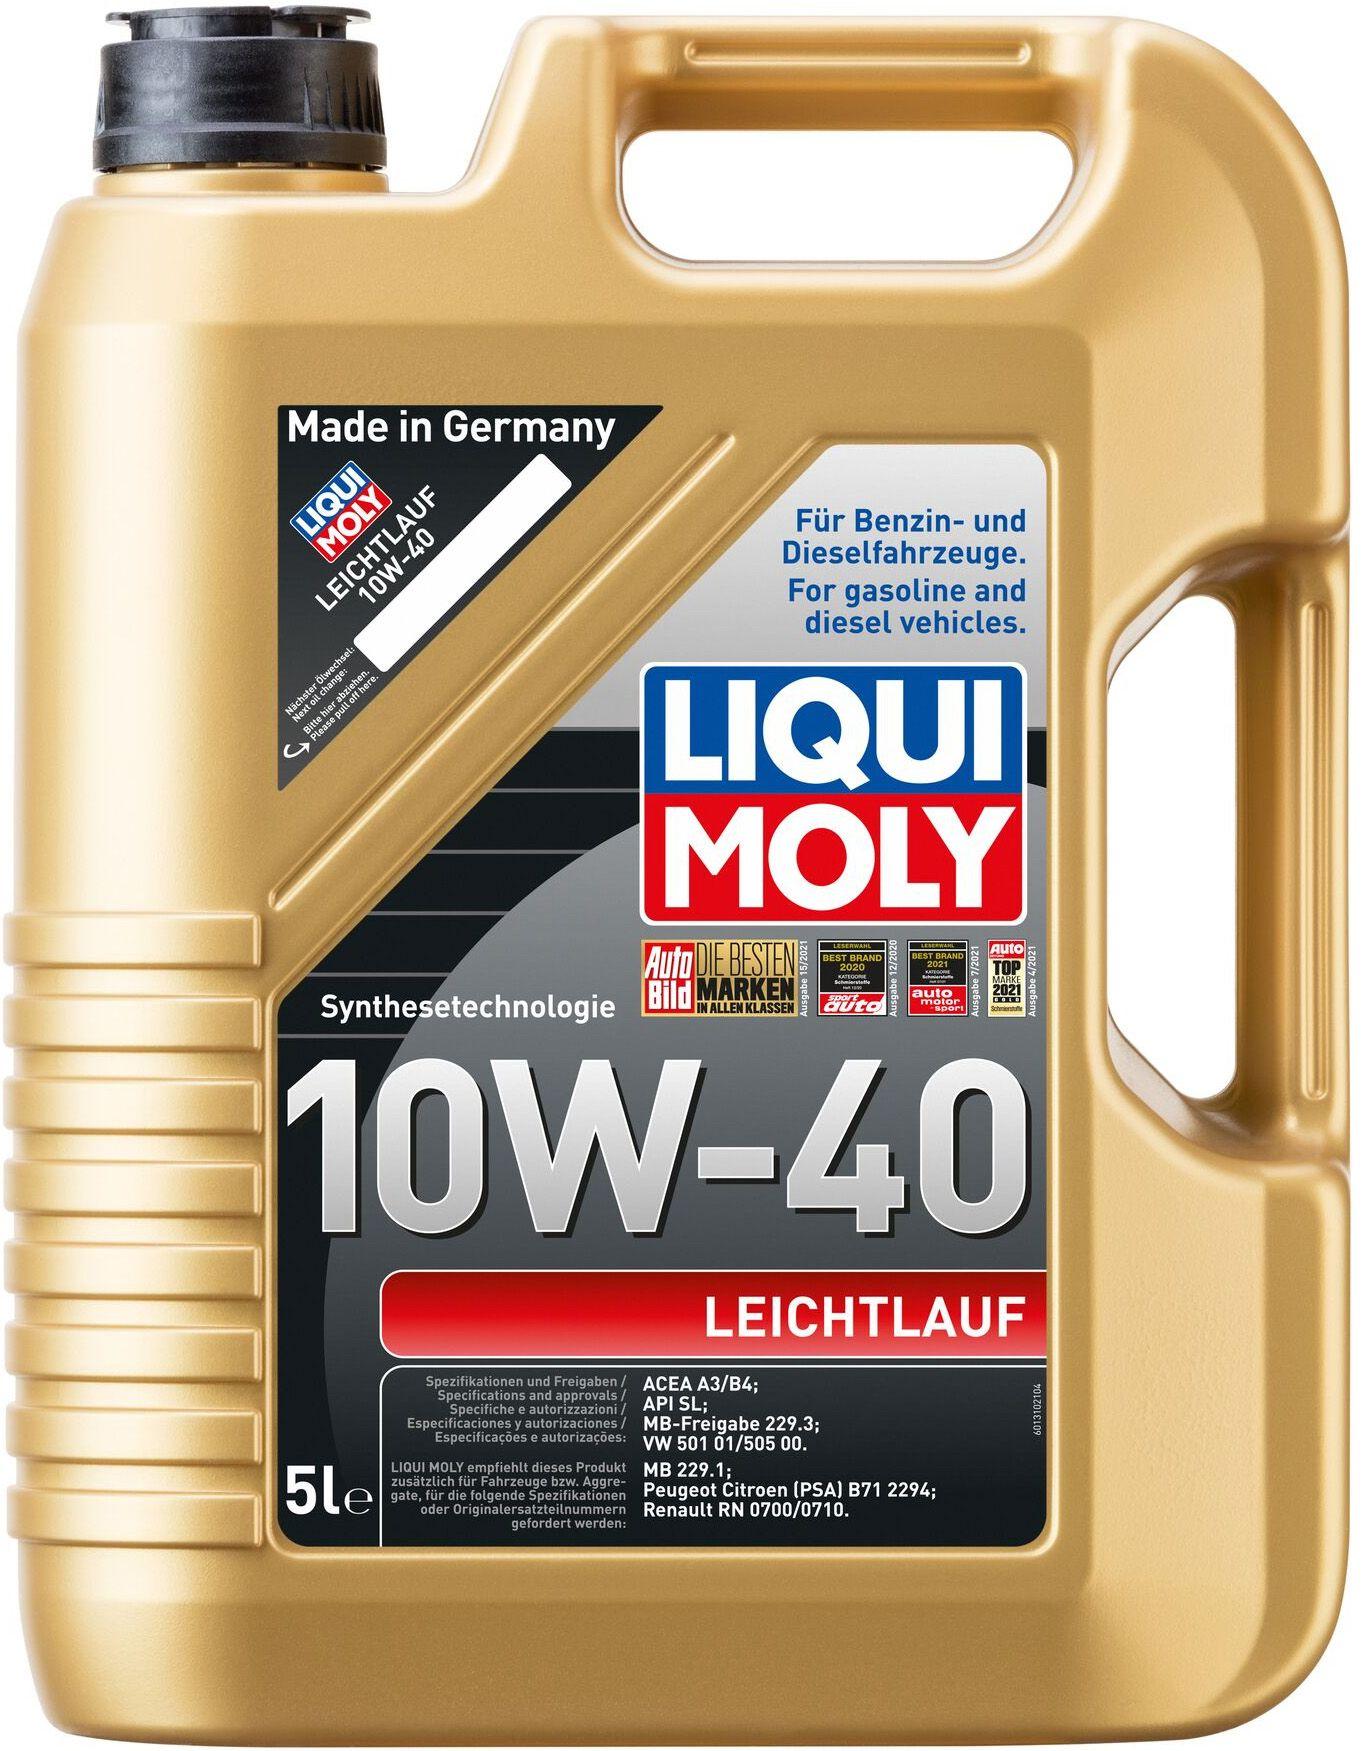 Моторное масло Liqui Moly Leichtlauf 10W-40, 5 литров (9502)